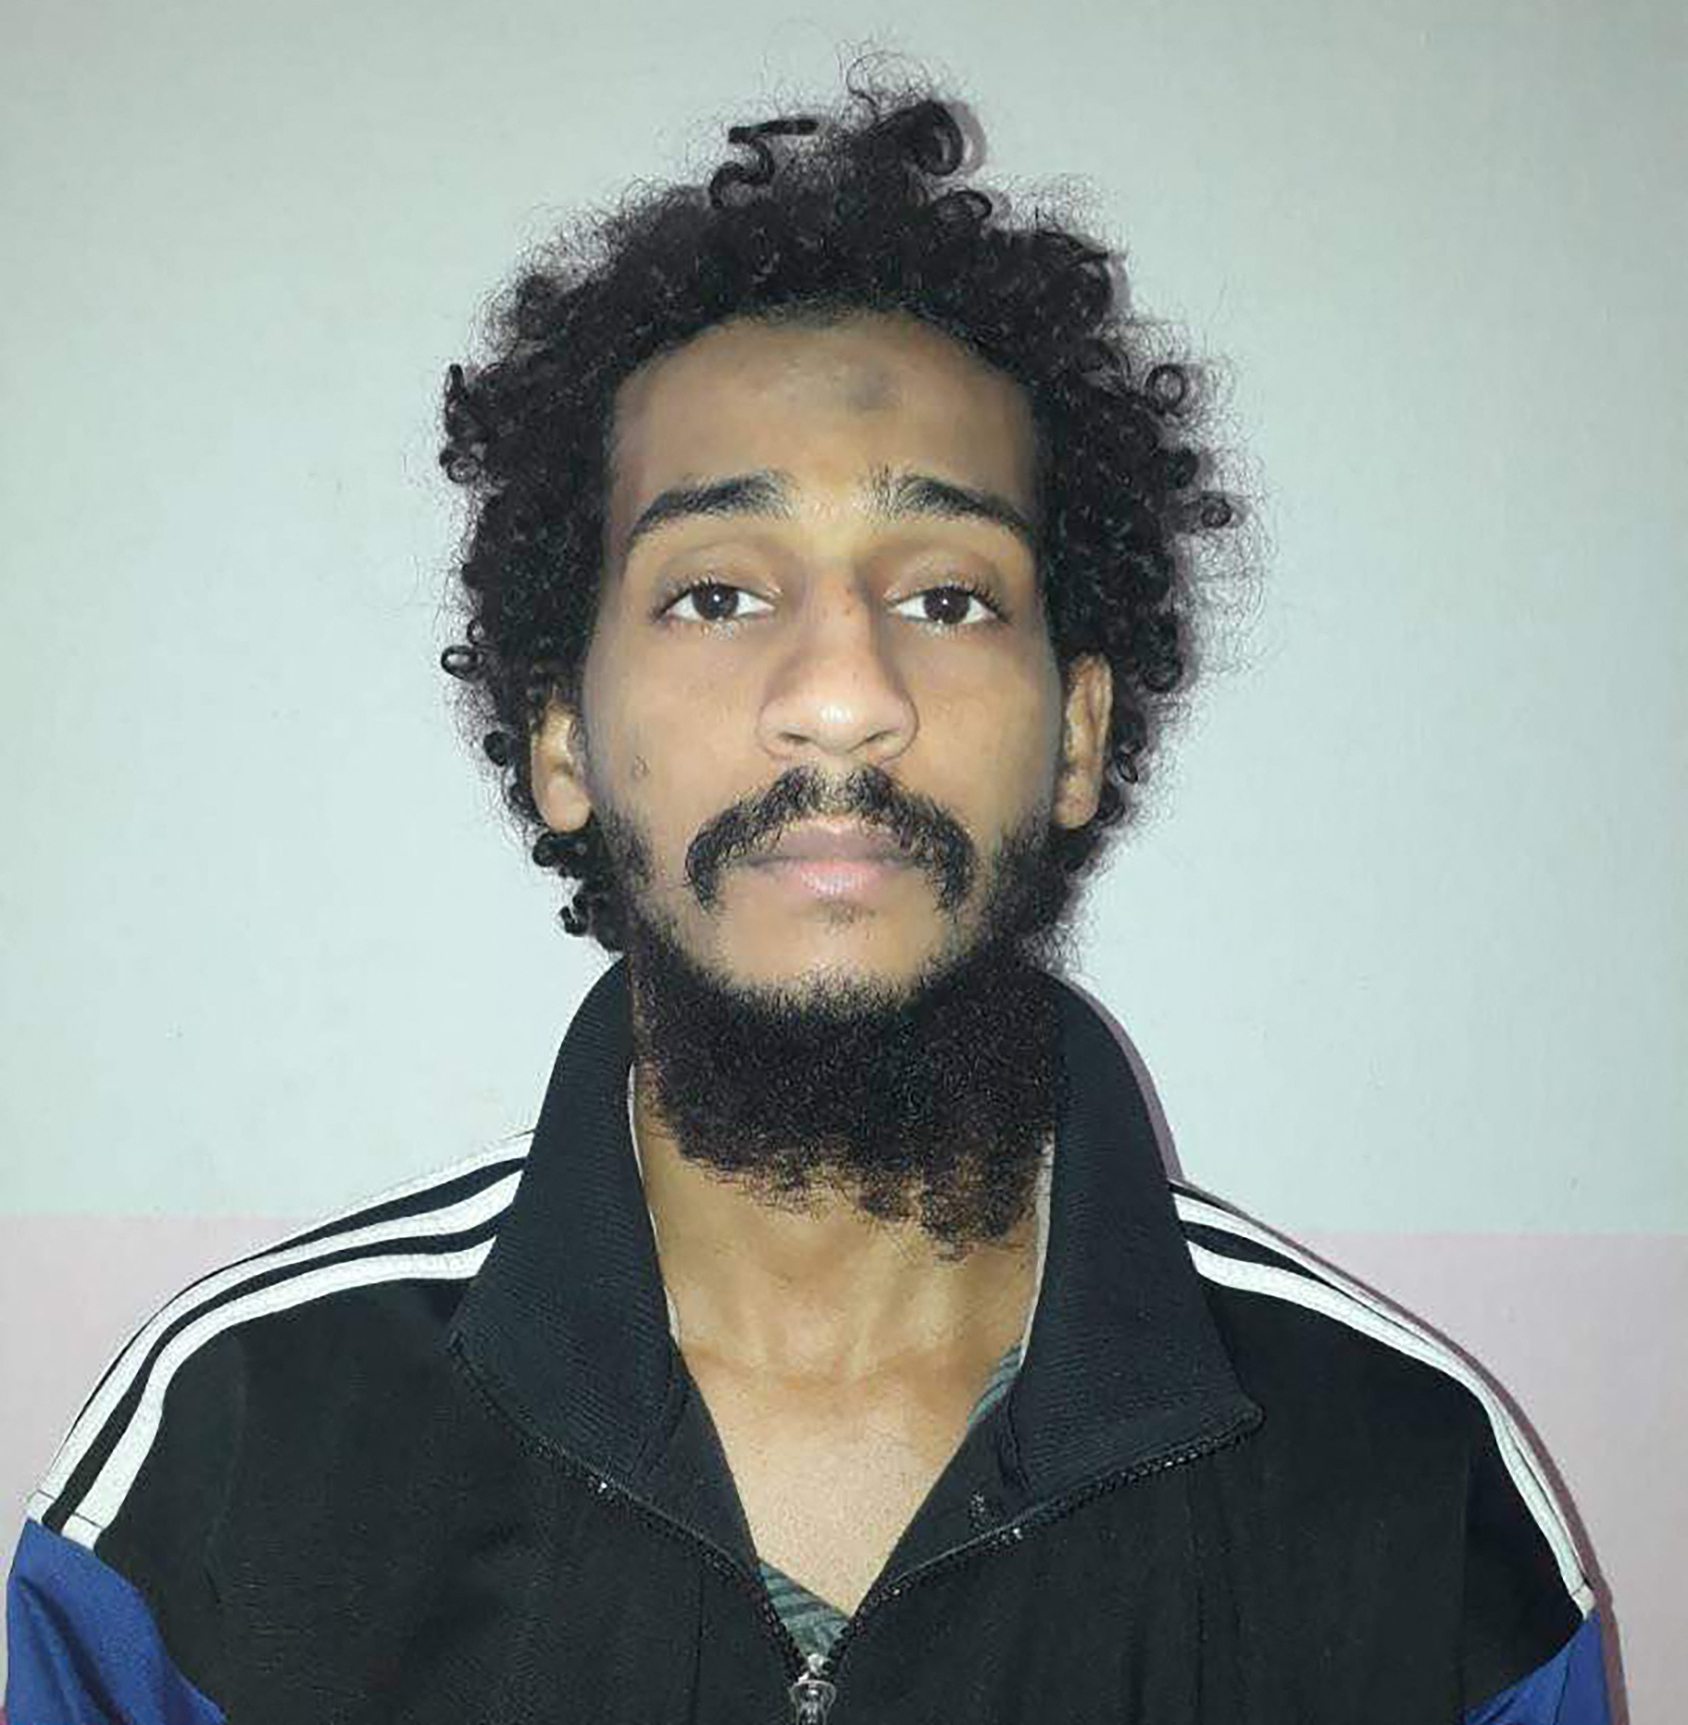 Declaran culpable a uno de los yihadistas de ‘los Beatles’ del Estado Islámico